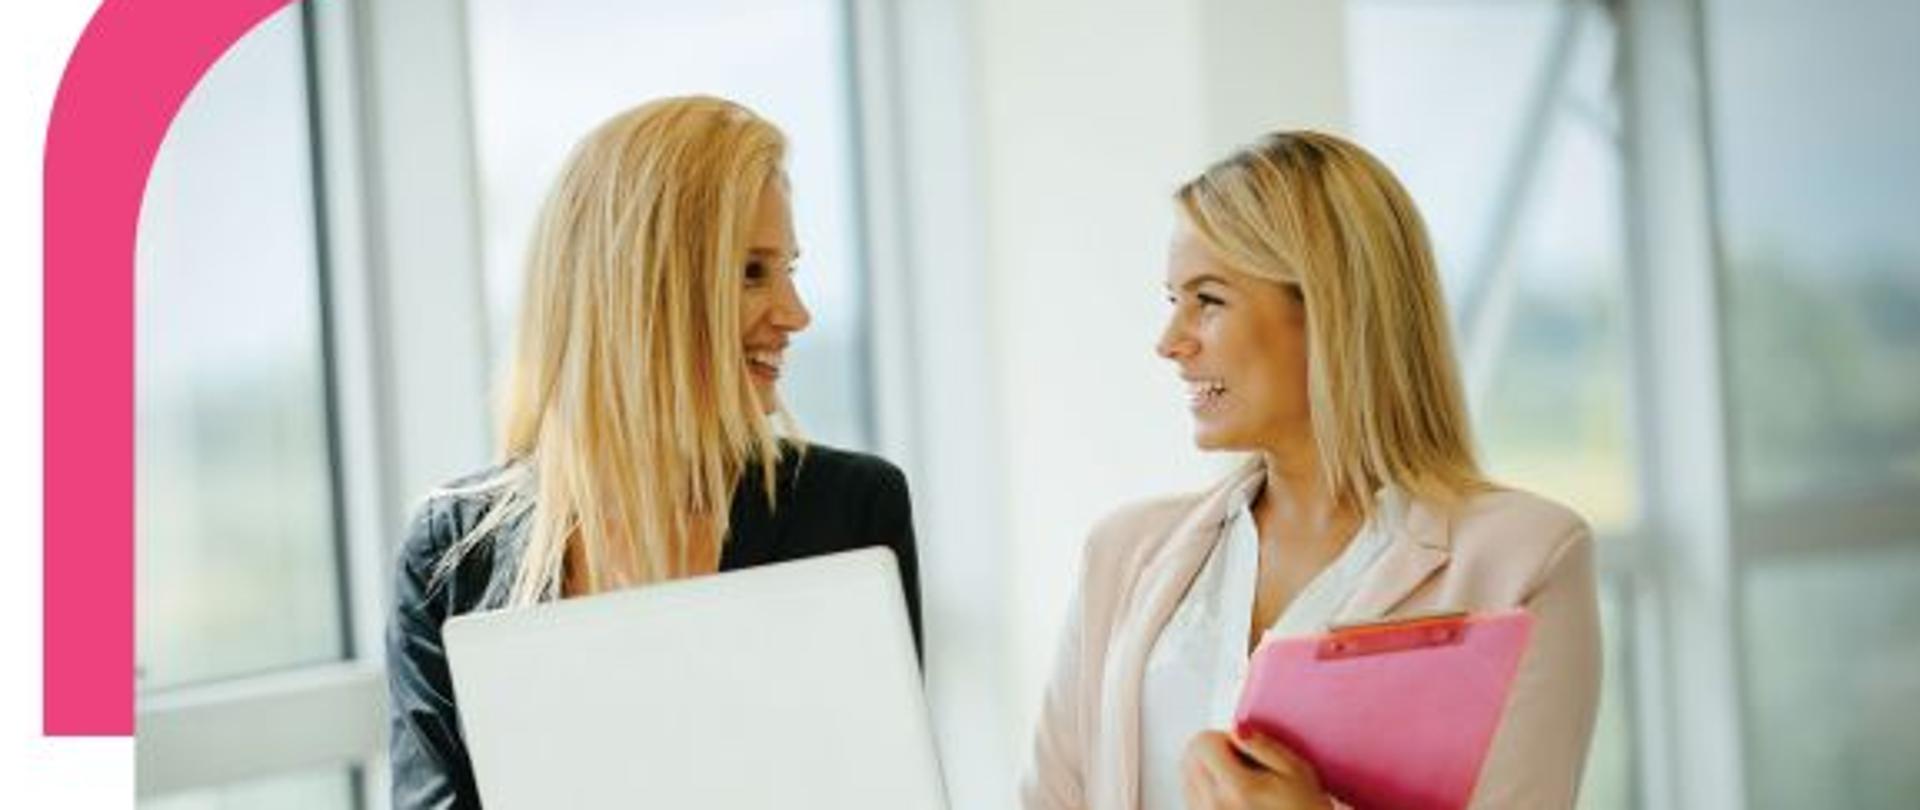 Plakat przedstawia dwie młode kobiety, które rozmawiają ze sobą. Jedna z kobiet trzyma w rękach laptop. Obie są blondynkami i uśmiechają się do siebie. Na plakacie dominują kolory białe i różowe 